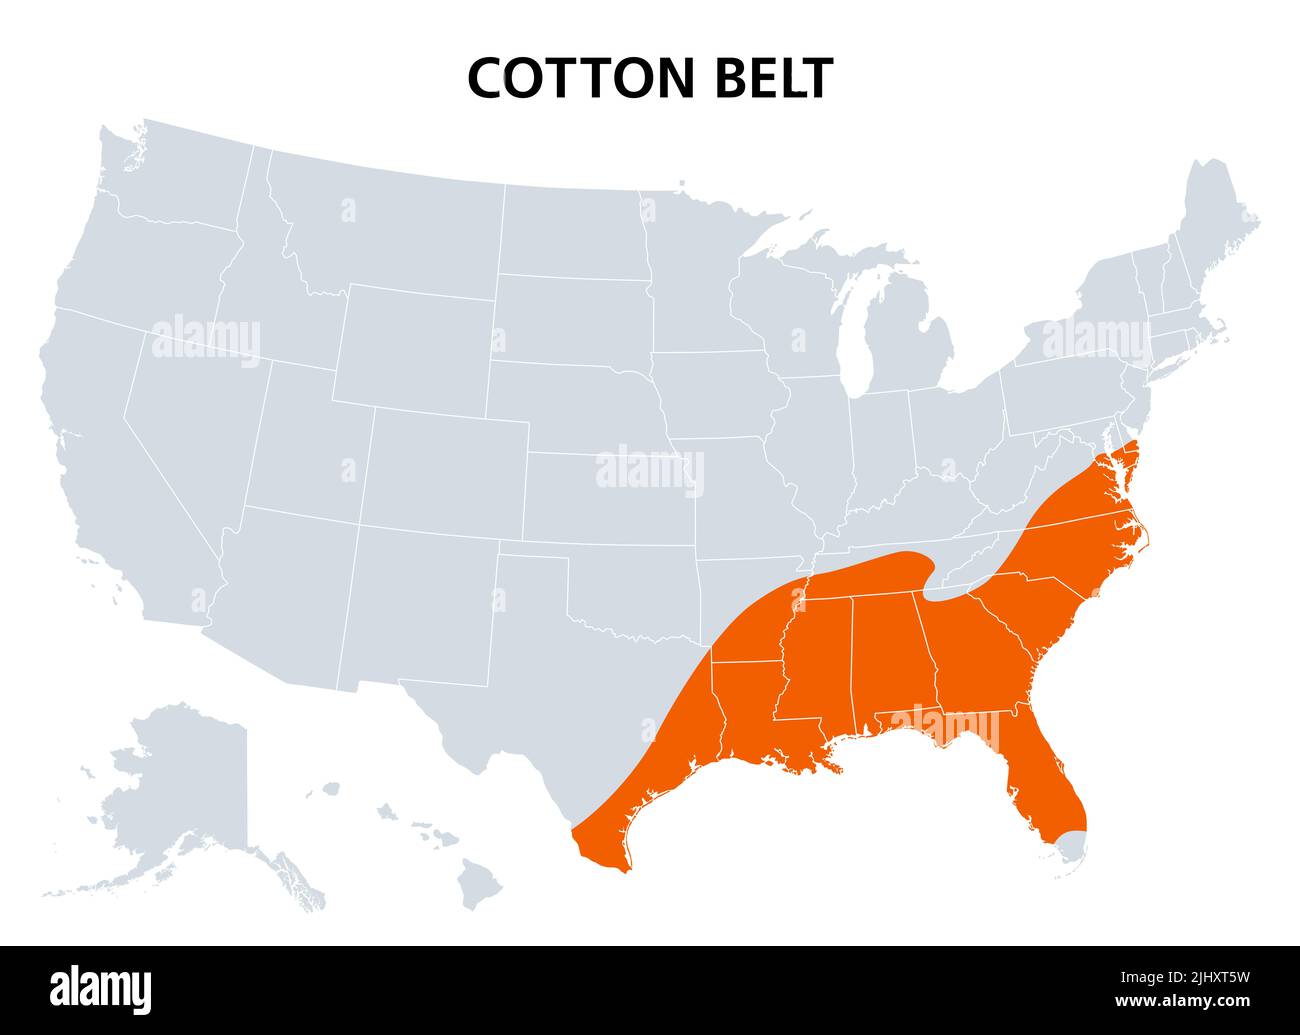 Baumwollgürtel der Vereinigten Staaten, politische Landkarte. Region des amerikanischen Südens, von Delaware bis East Texas, wo Baumwolle die vorherrschende Cash-Ernte war. Stockfoto